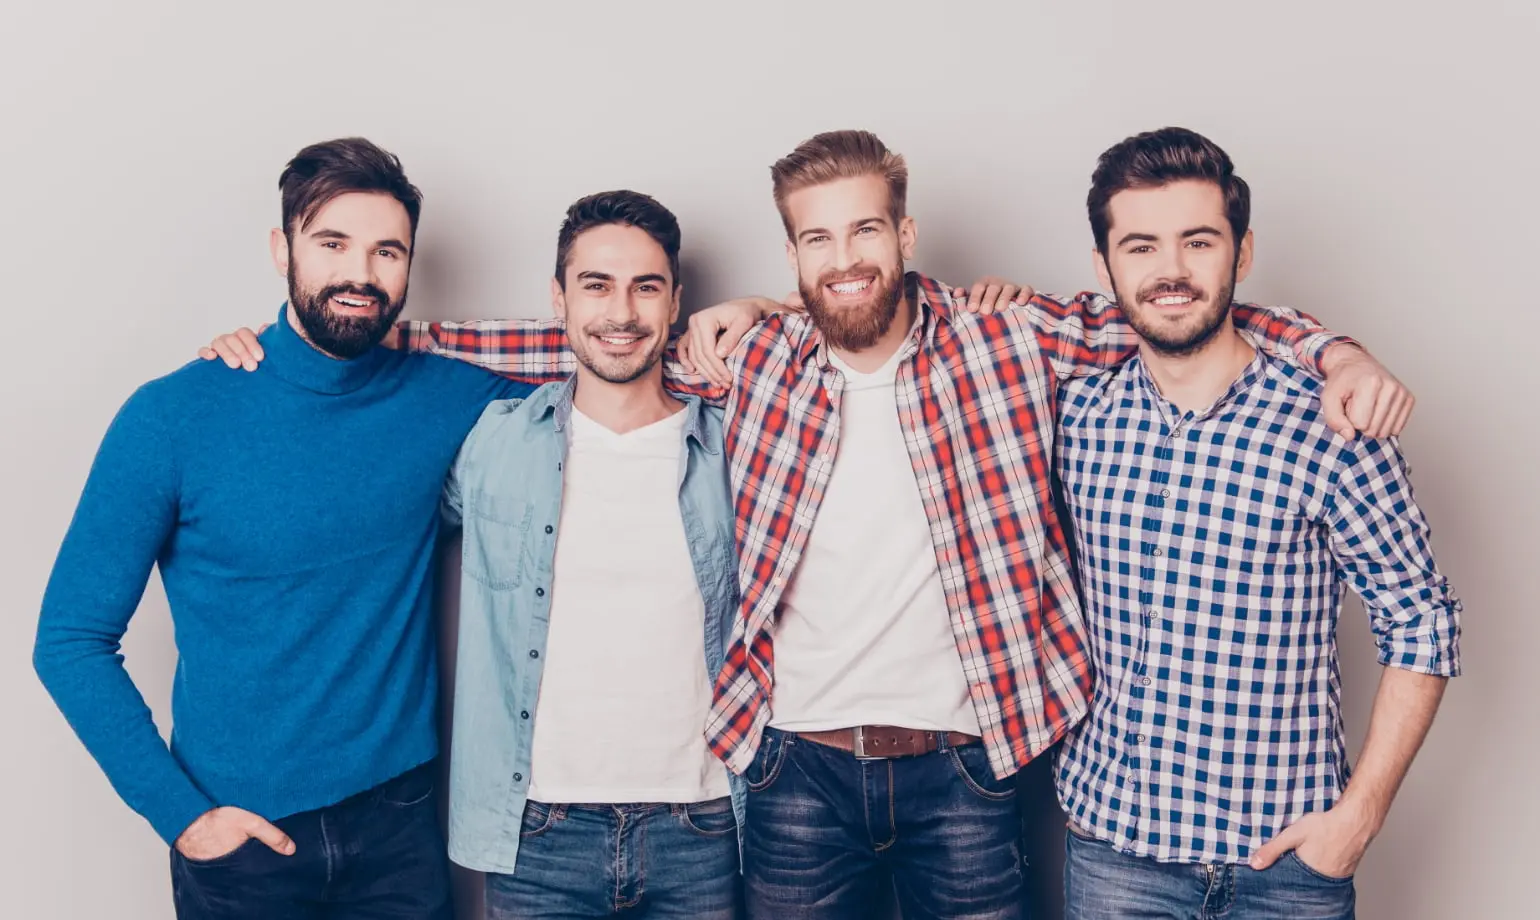 Männer mit unterschiedlichen Bartstilen